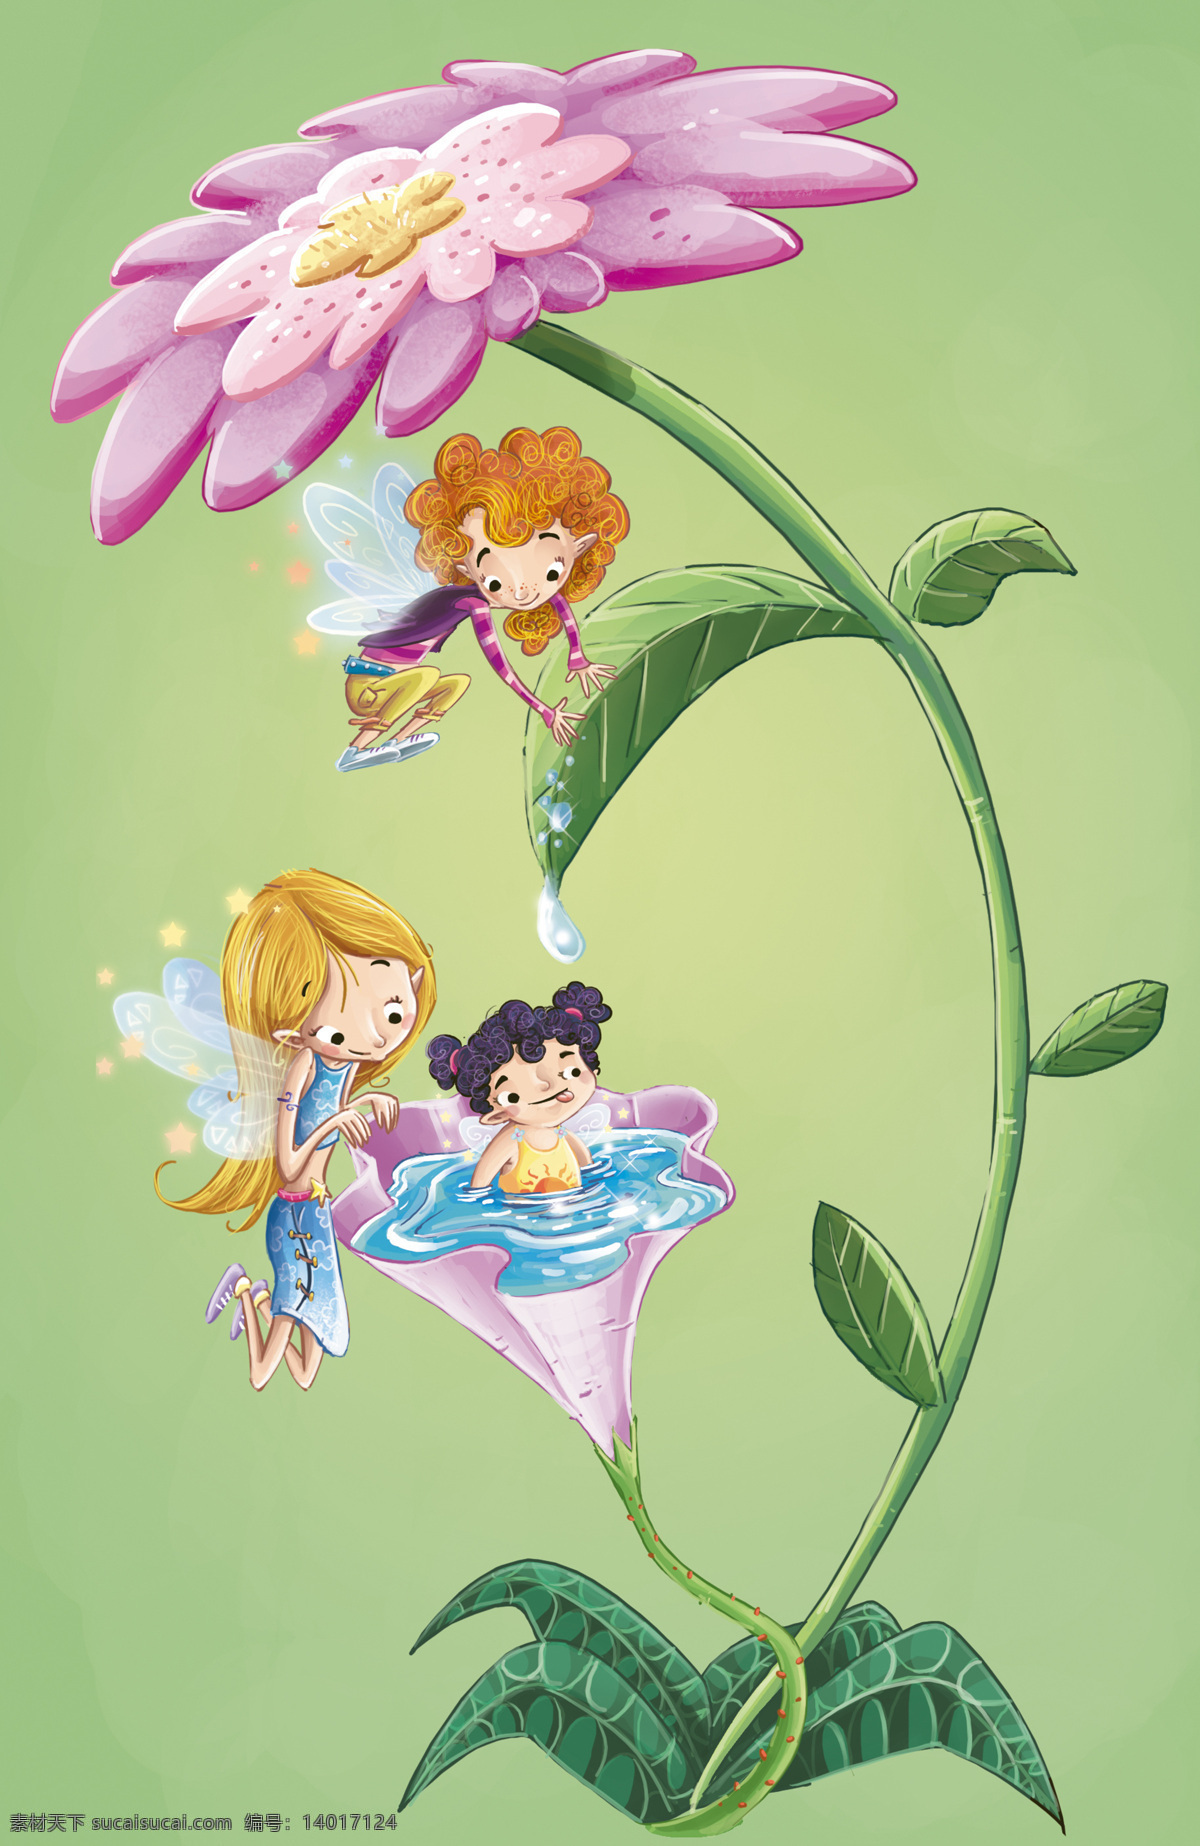 卡通 儿童 插画 背景 花朵 女孩 男孩 植物 手绘 儿童插画 插画背景 卡通背景 其他类别 生活百科